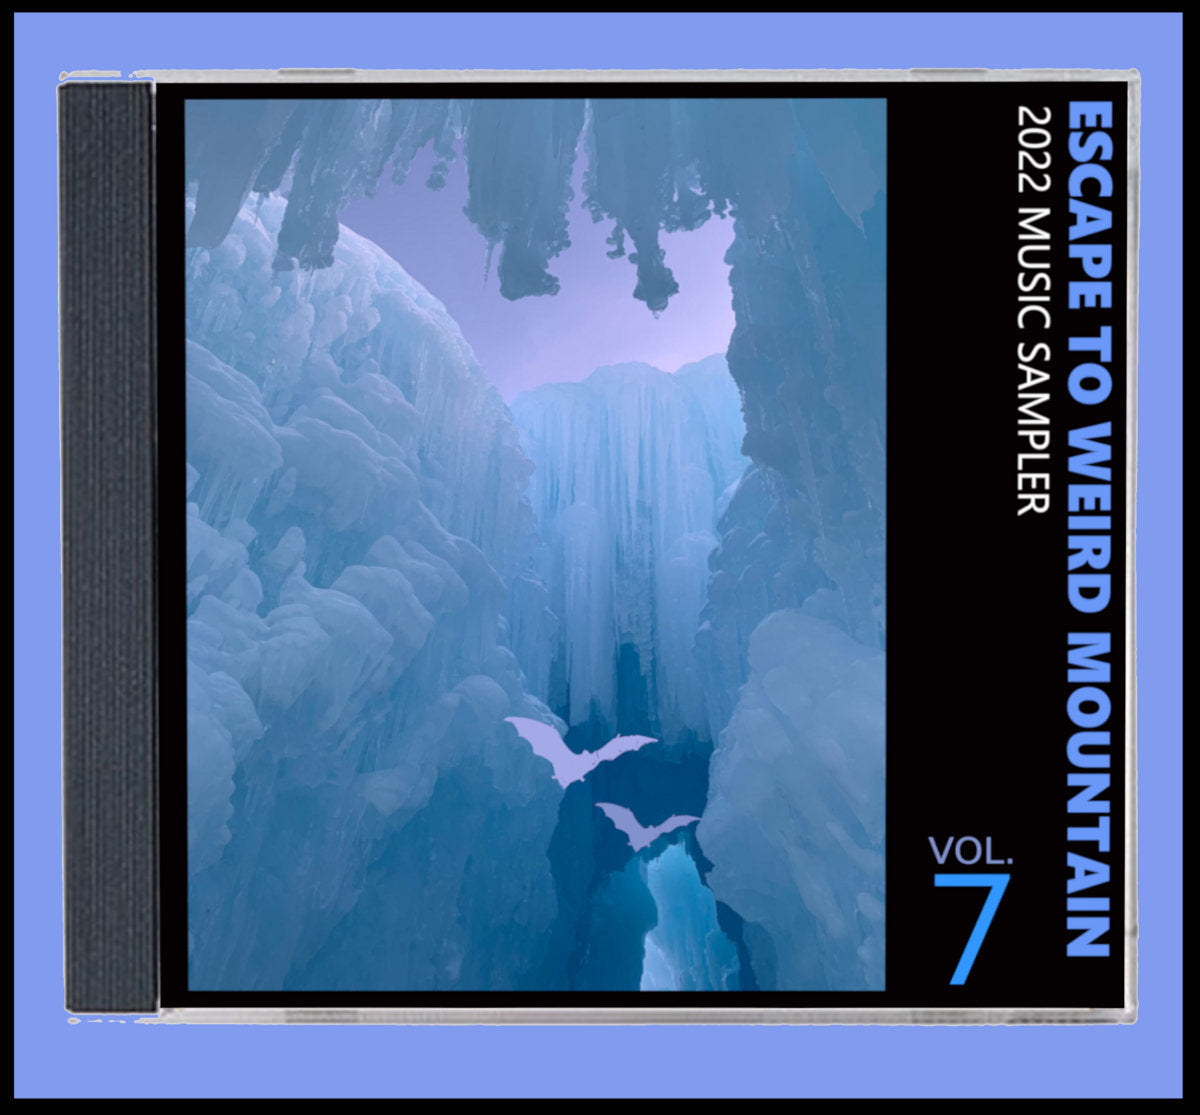 Escape To Weird Mountain Volume 7 Compact Disc